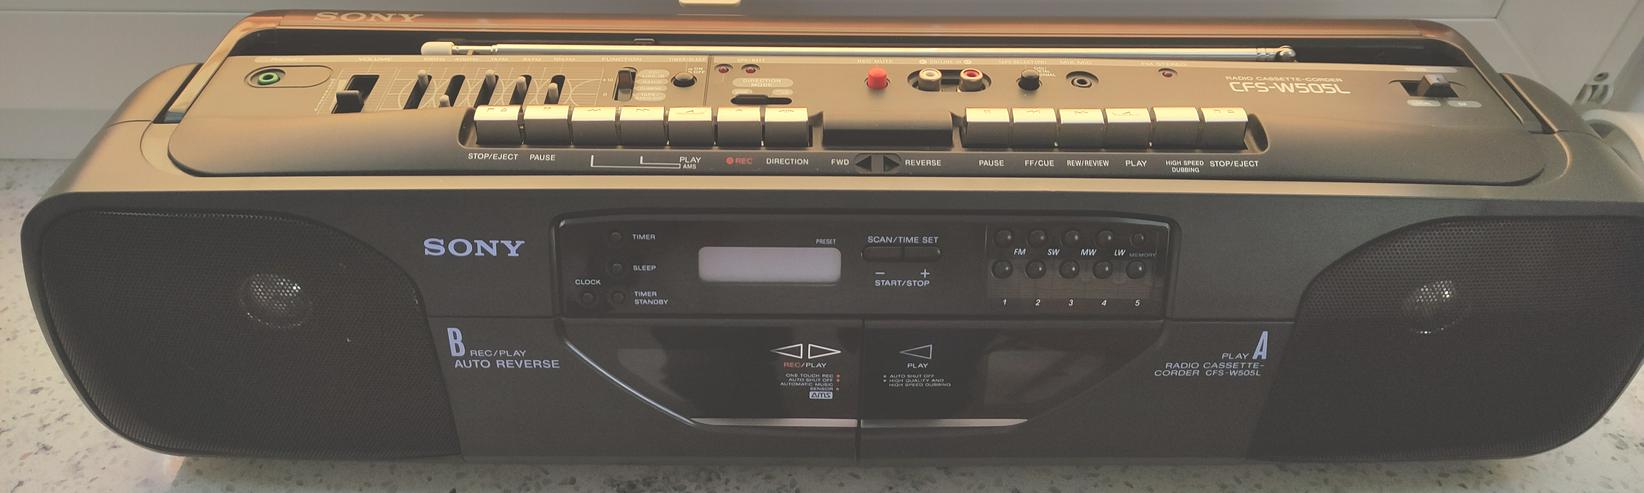 Radio-Doppel-Cassettenrekorder Sony - Radios, Radiowecker, Weltempfänger usw. - Bild 1